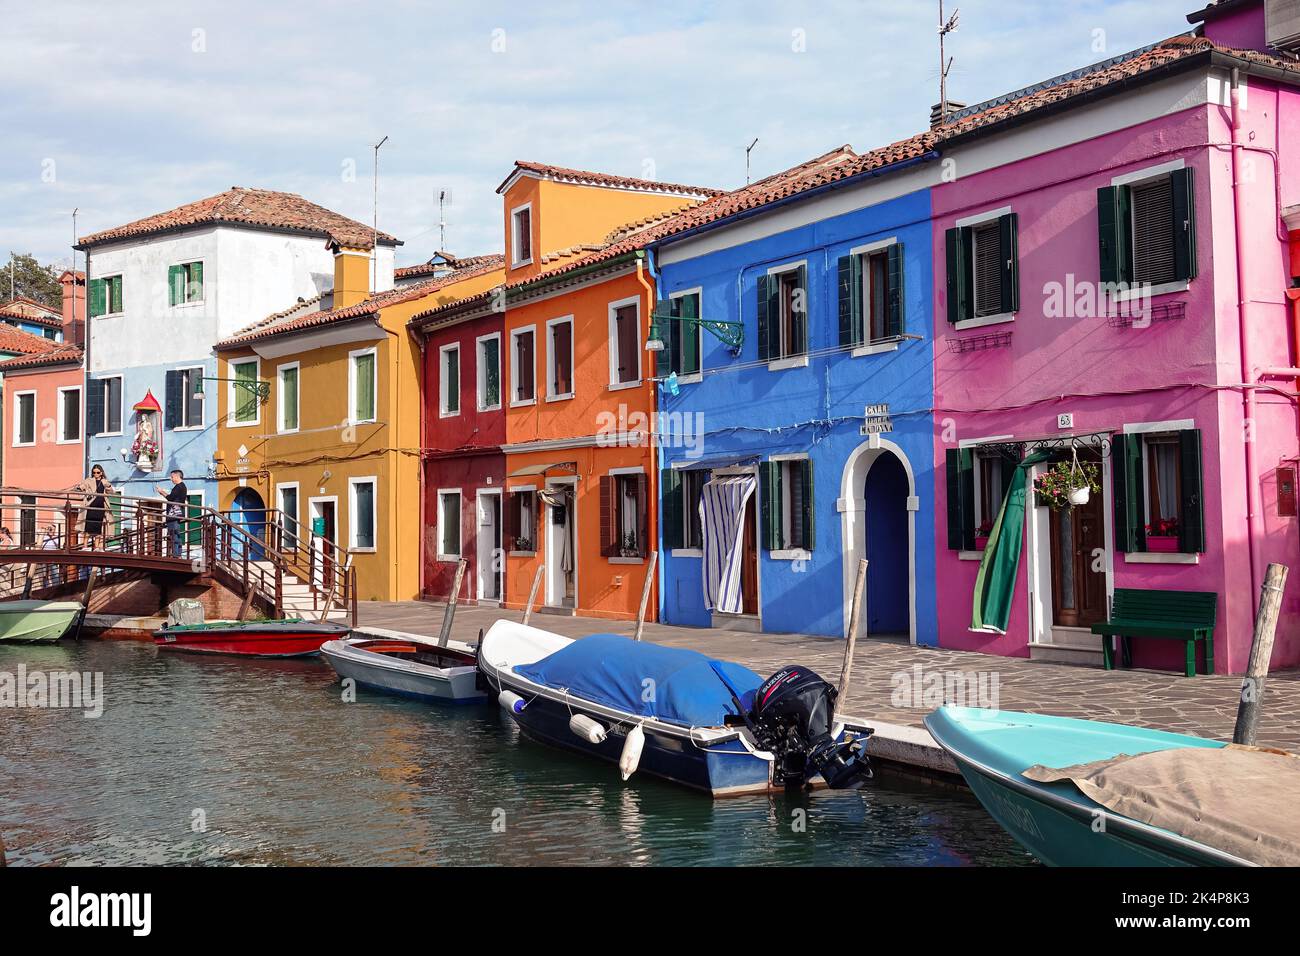 Die Insel Burano. Burano ist eine der Inseln Venedigs, die für ihre bunten Häuser bekannt ist. Burano, Venedig - Oktober 2022 Stockfoto